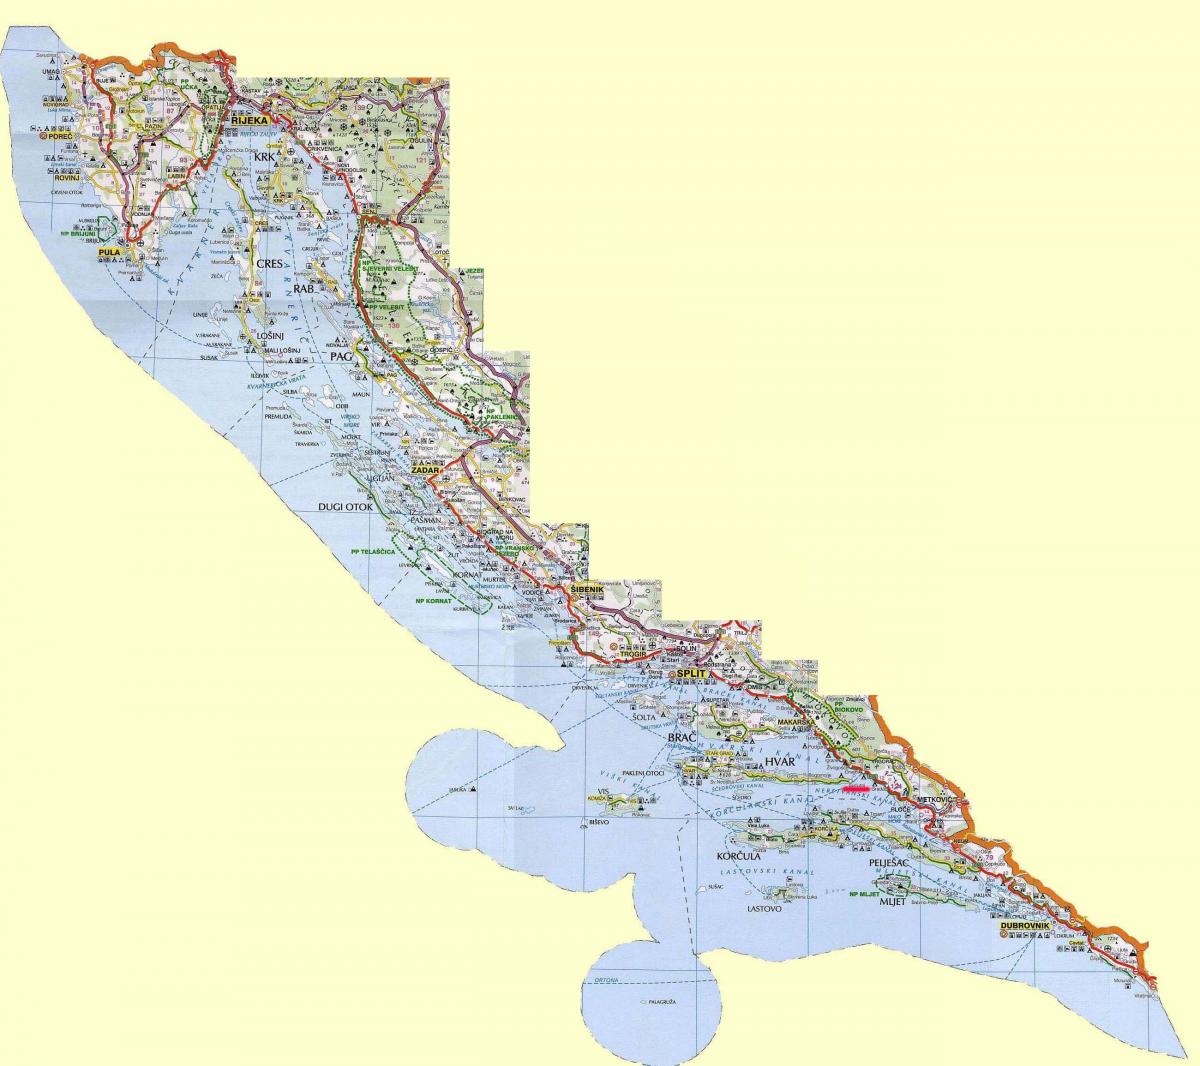 térkép horvát tengerpart, valamint szigetek